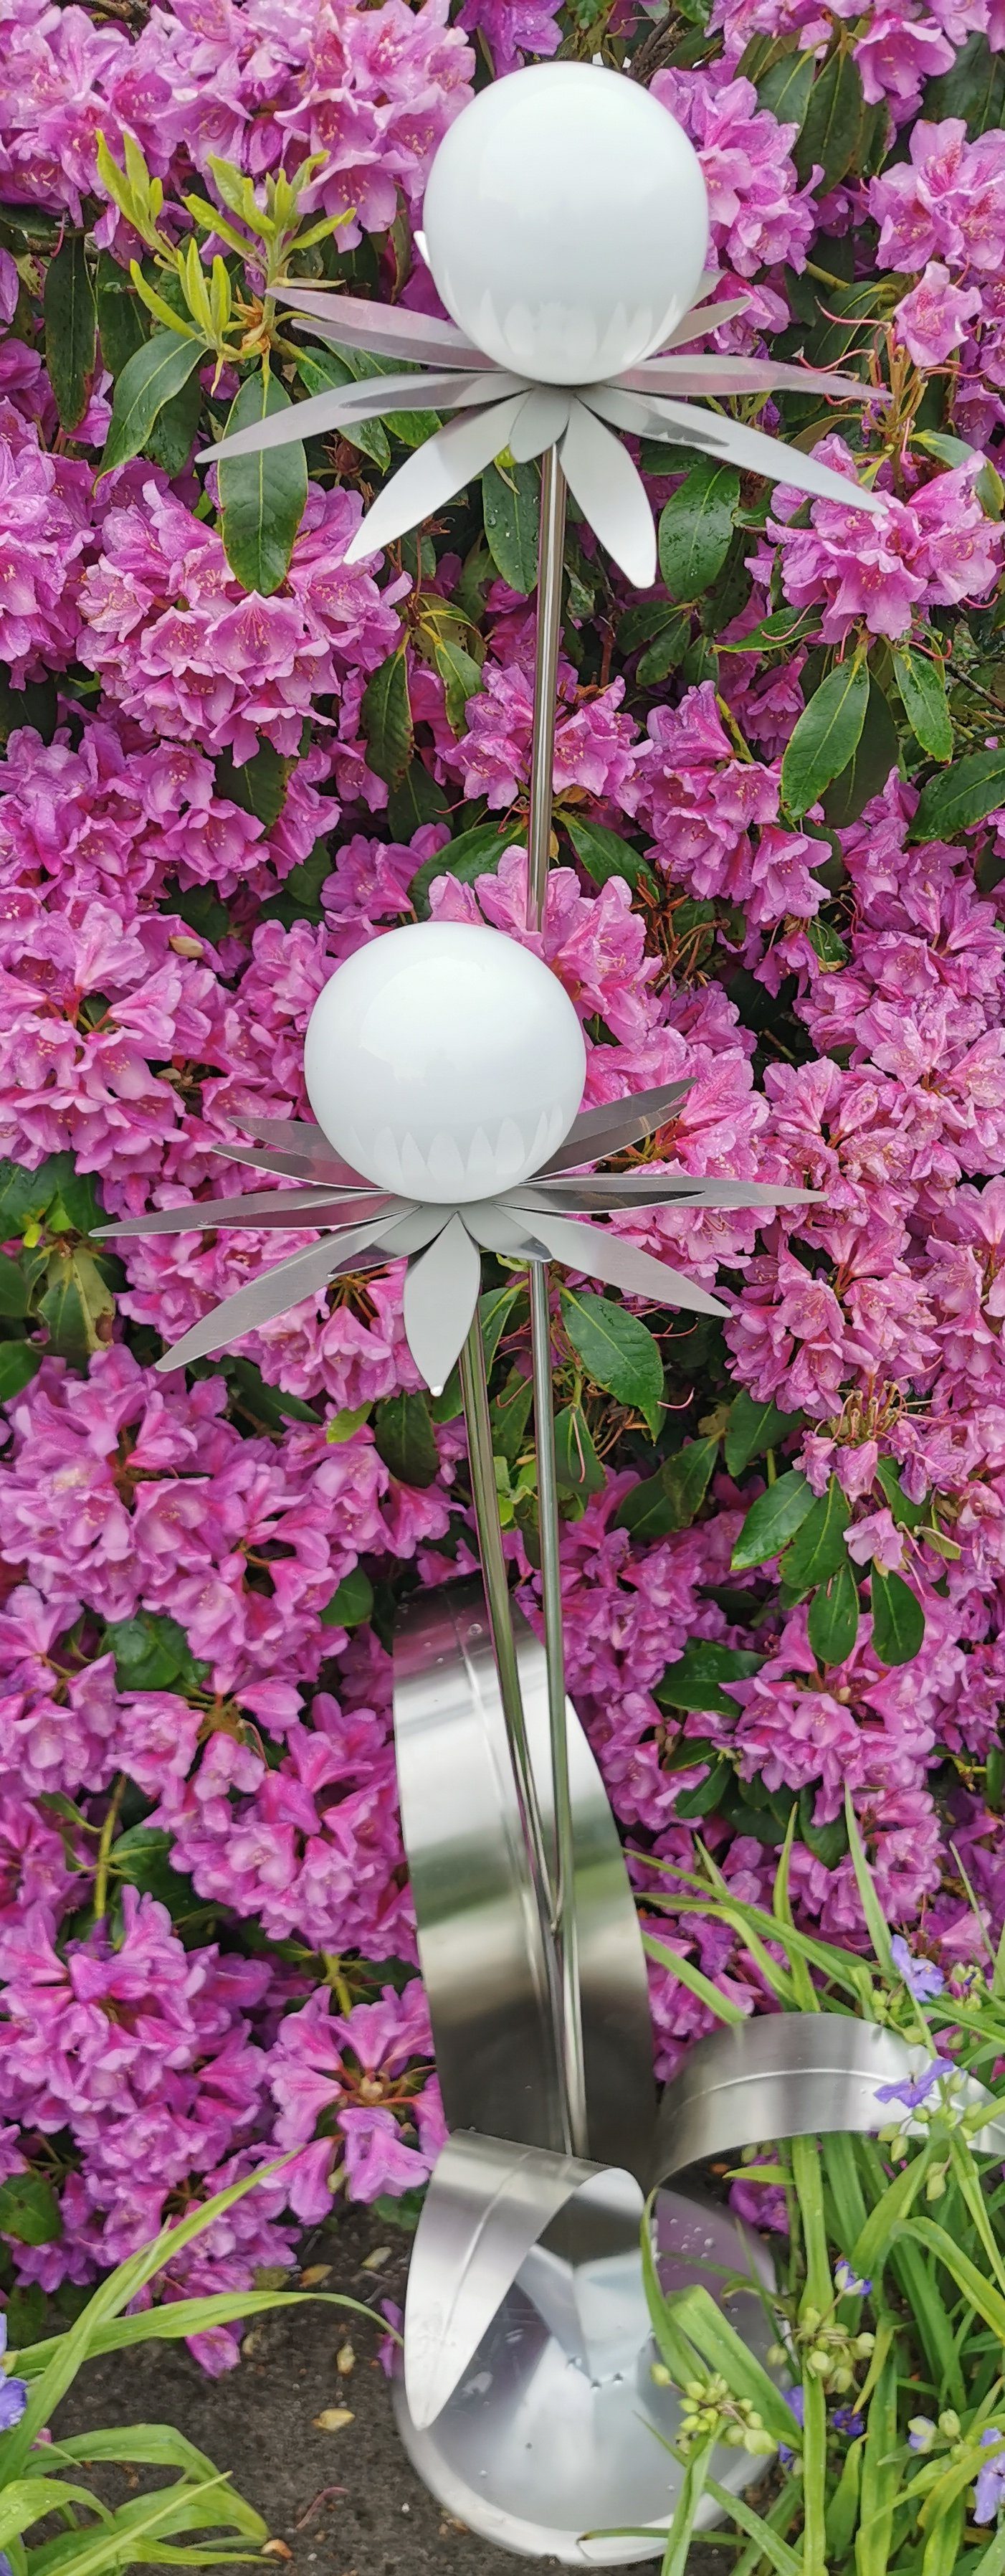 Jürgen Bocker Garten-Ambiente Gartenstecker Skulptur Blume Milano Edelstahl 120 cm Kugel weiß poliert Standfuß